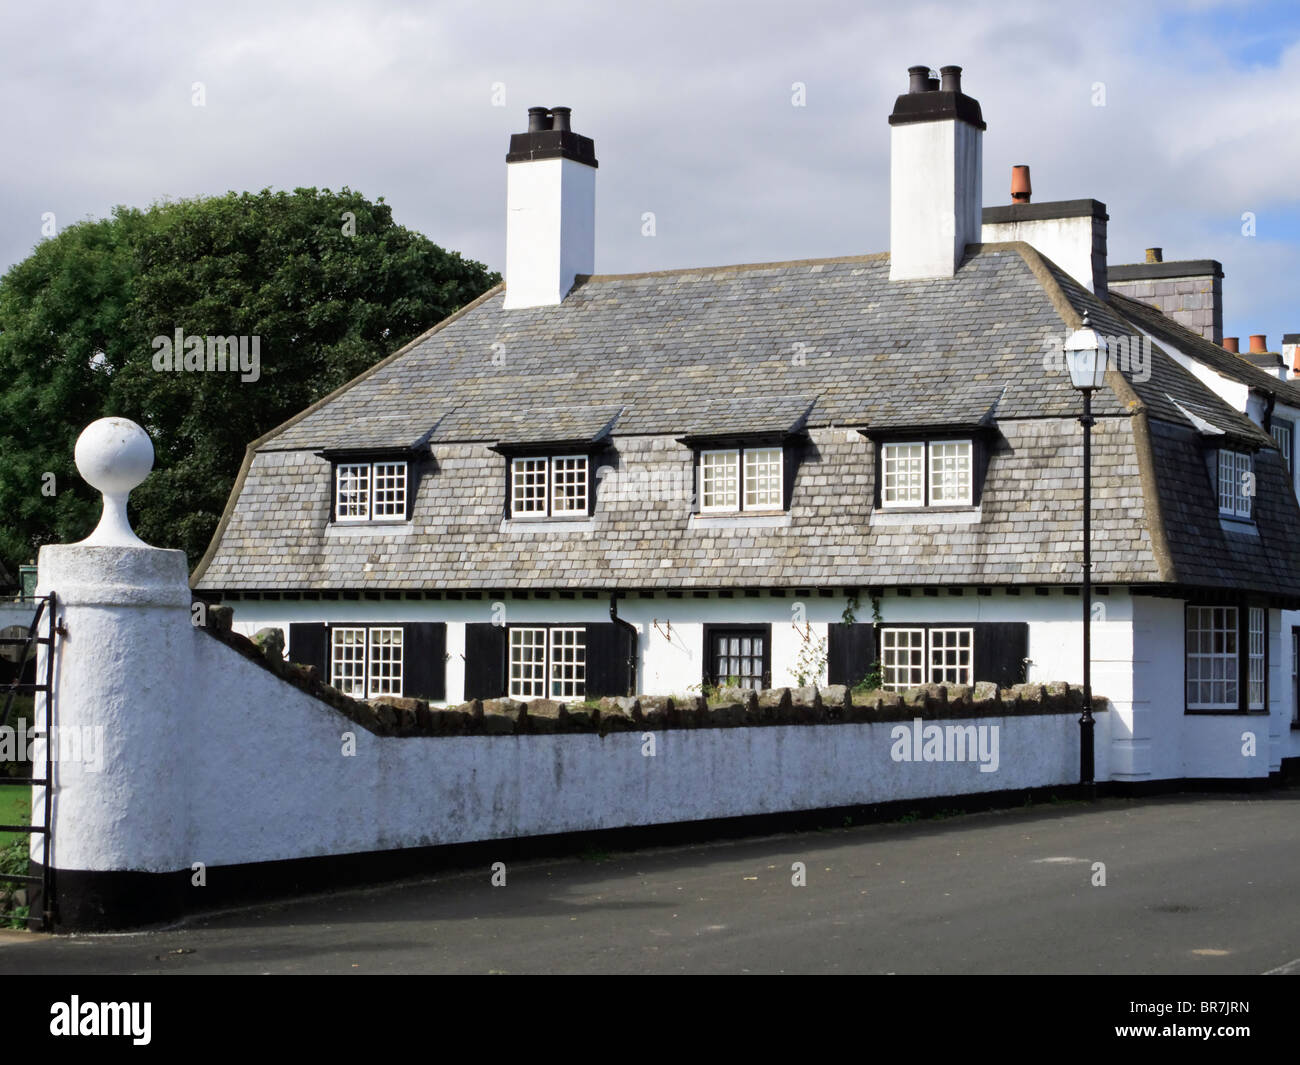 Maud cottages dans le village de Cushendall comté sur la côte d'Antrim, en Irlande du Nord Banque D'Images